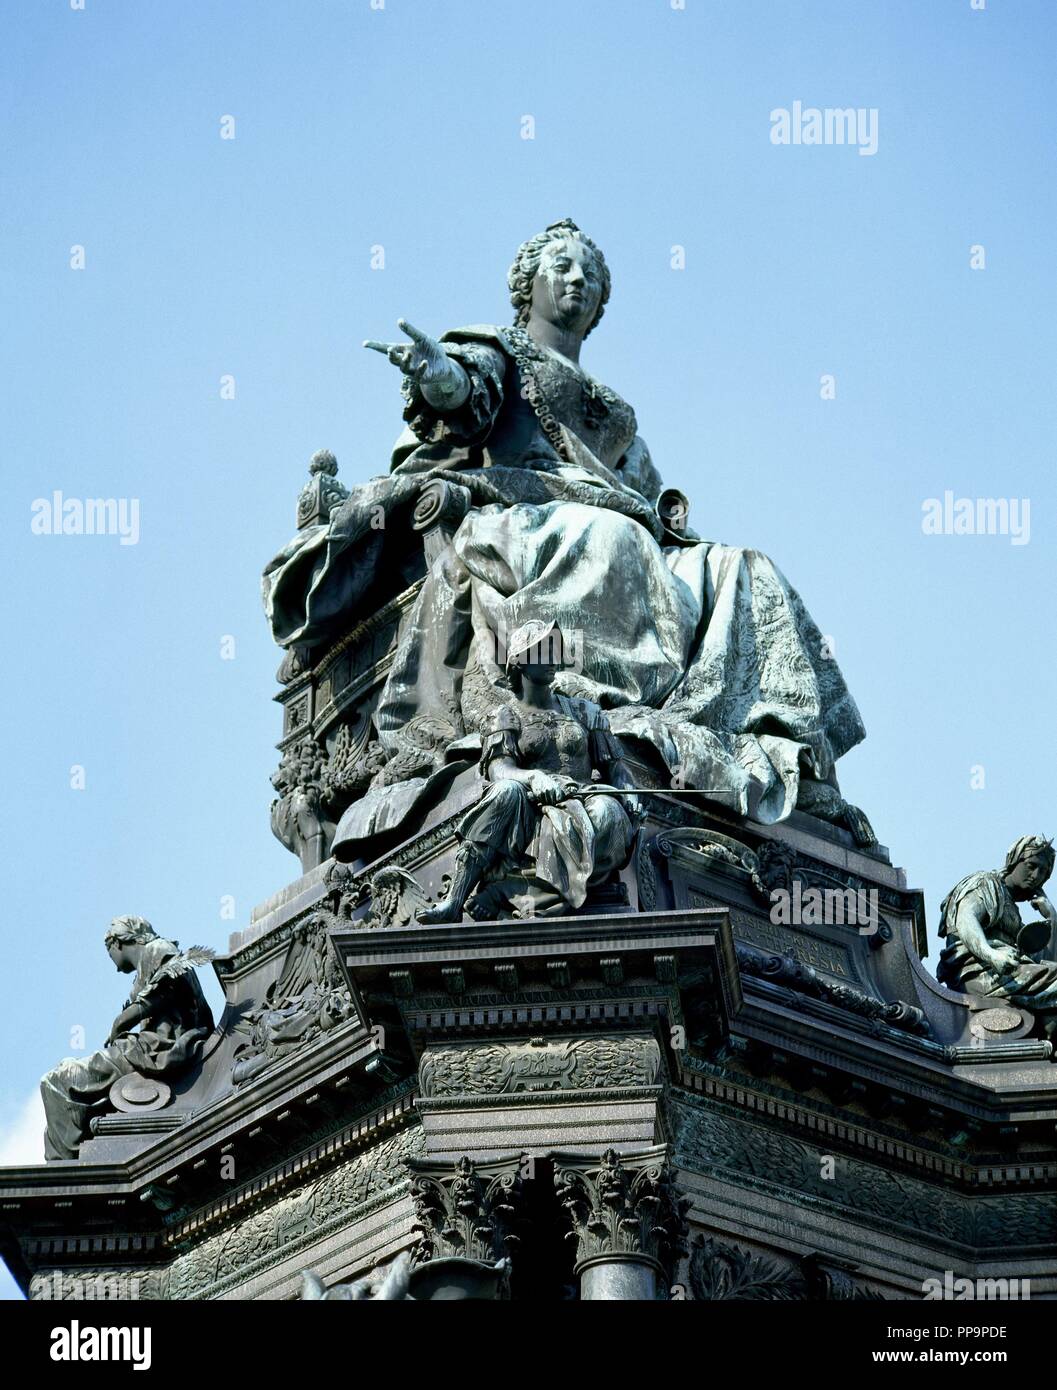 Marie-thérèse (1717-1780). L'Impératrice du Saint Empire Romain. Statue de la Maria Theresia monument. Par sculpteur allemand Kaspar von Zumbusch, 1888. Vienne. L'Autriche. Banque D'Images